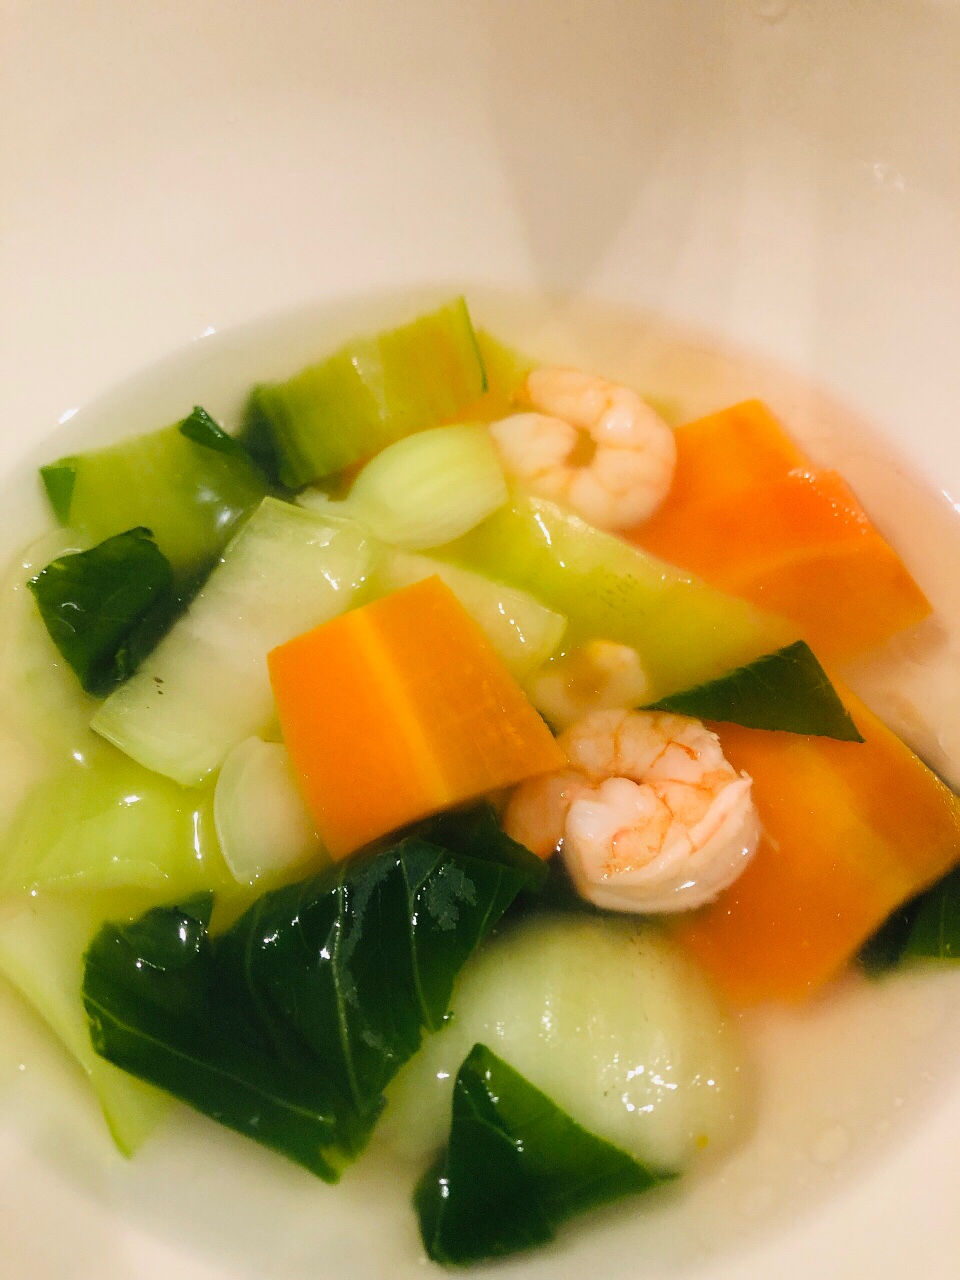 冷凍むきエビと青梗菜の中華風スープ